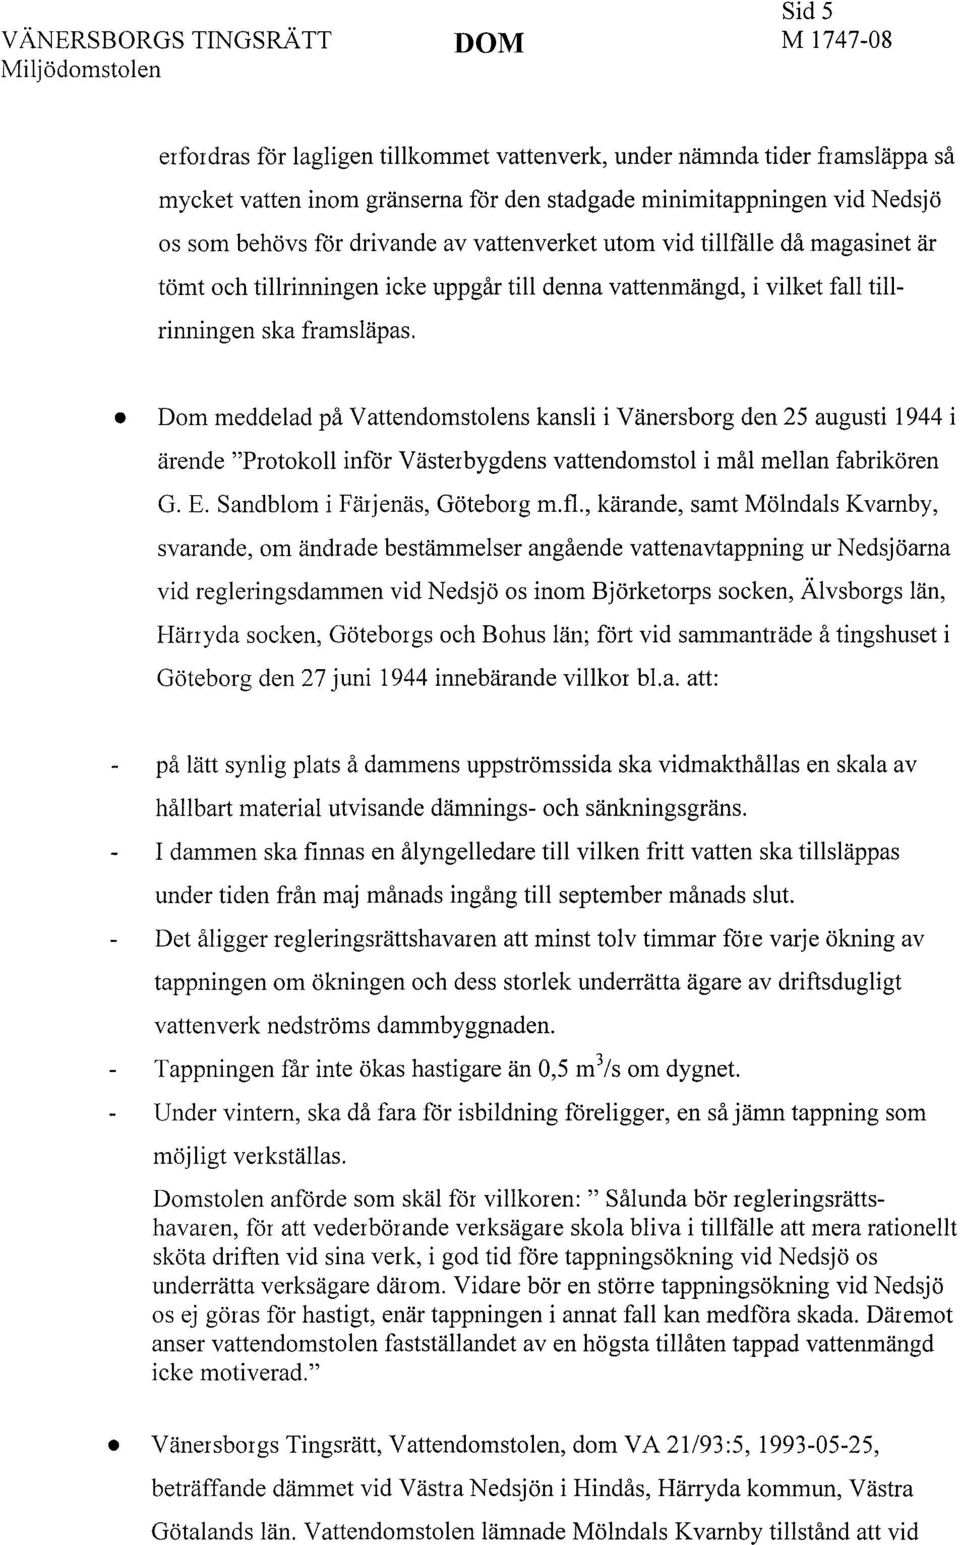 Dom meddelad på Vattendomstolens kansli i Vänersborg den 25 augusti 1944 i ärende "Protokoll inför Västerbygdens vattendomstol i mål mellan fabrikören G. E. Sandblom i Färjenäs, Göteborg m.fl.